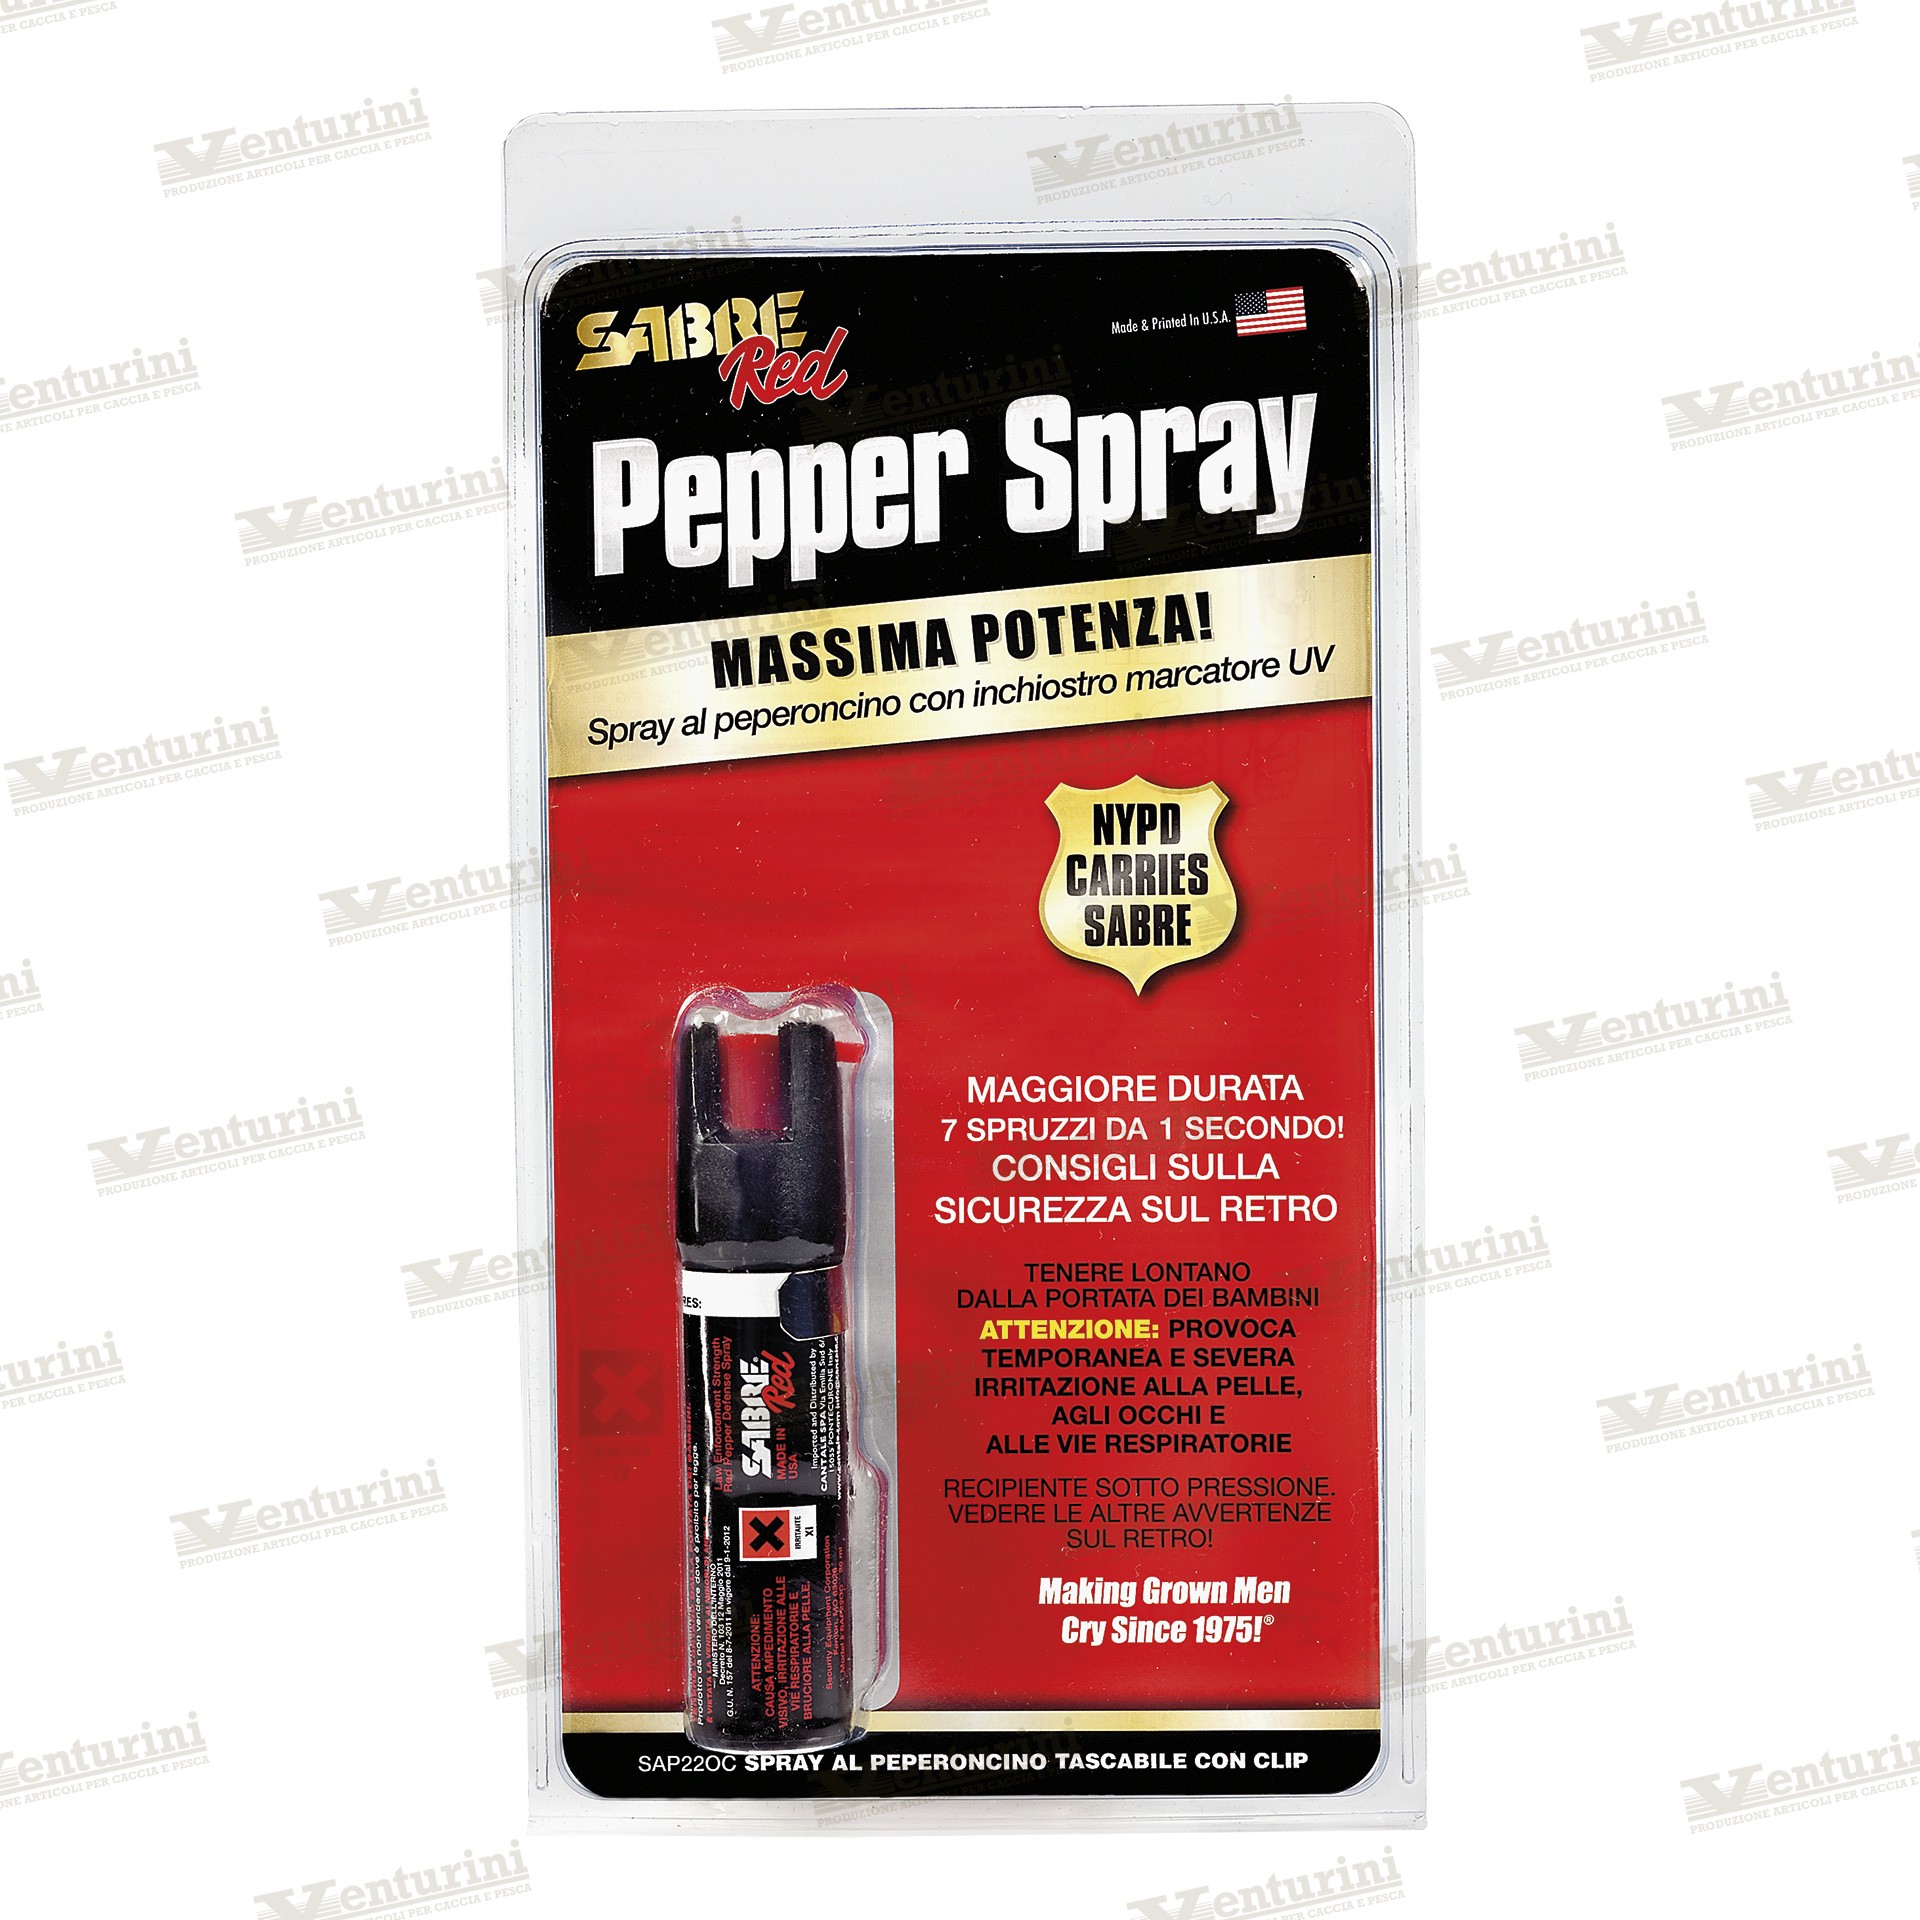 Sabre Red Spray 20ml - Venturini Shop